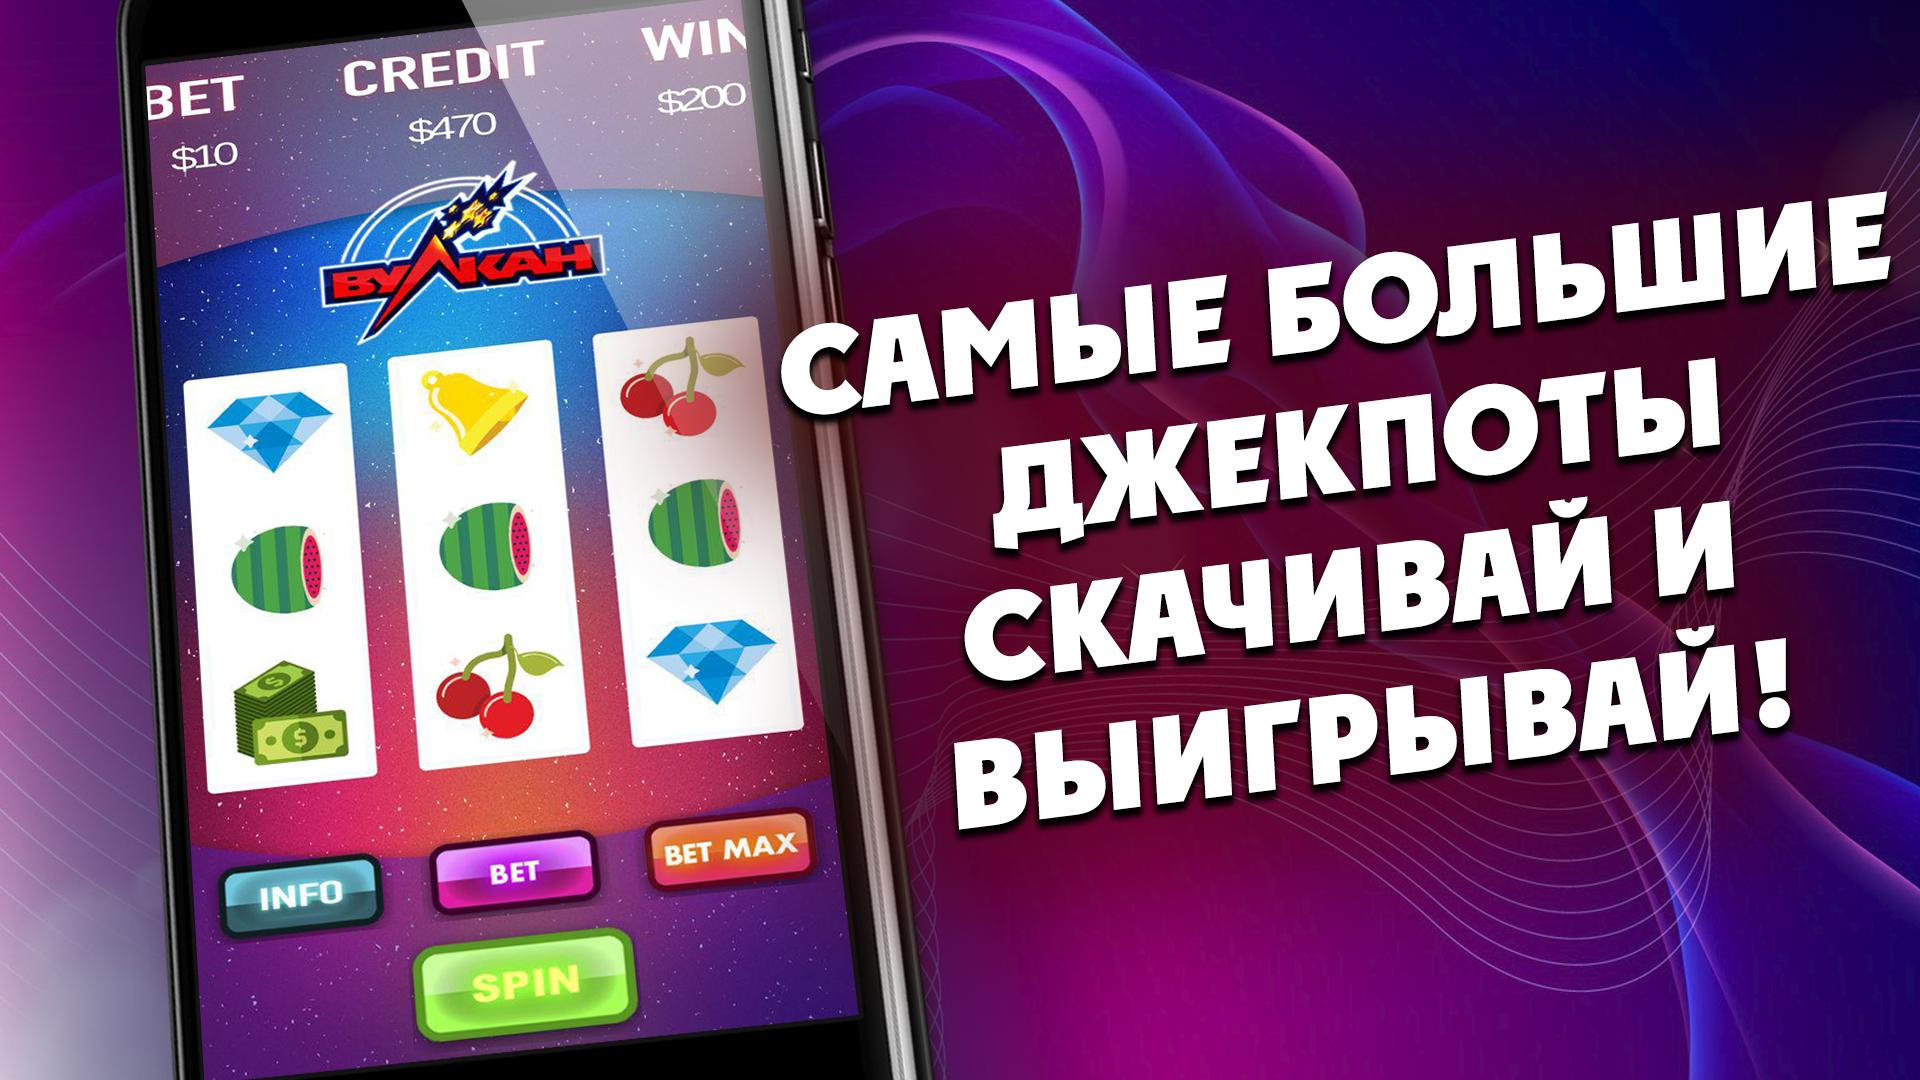 Игровые автоматы вулкан на мобильный телефон играть игры бесплатно без регистрации игровые автоматы новые 777